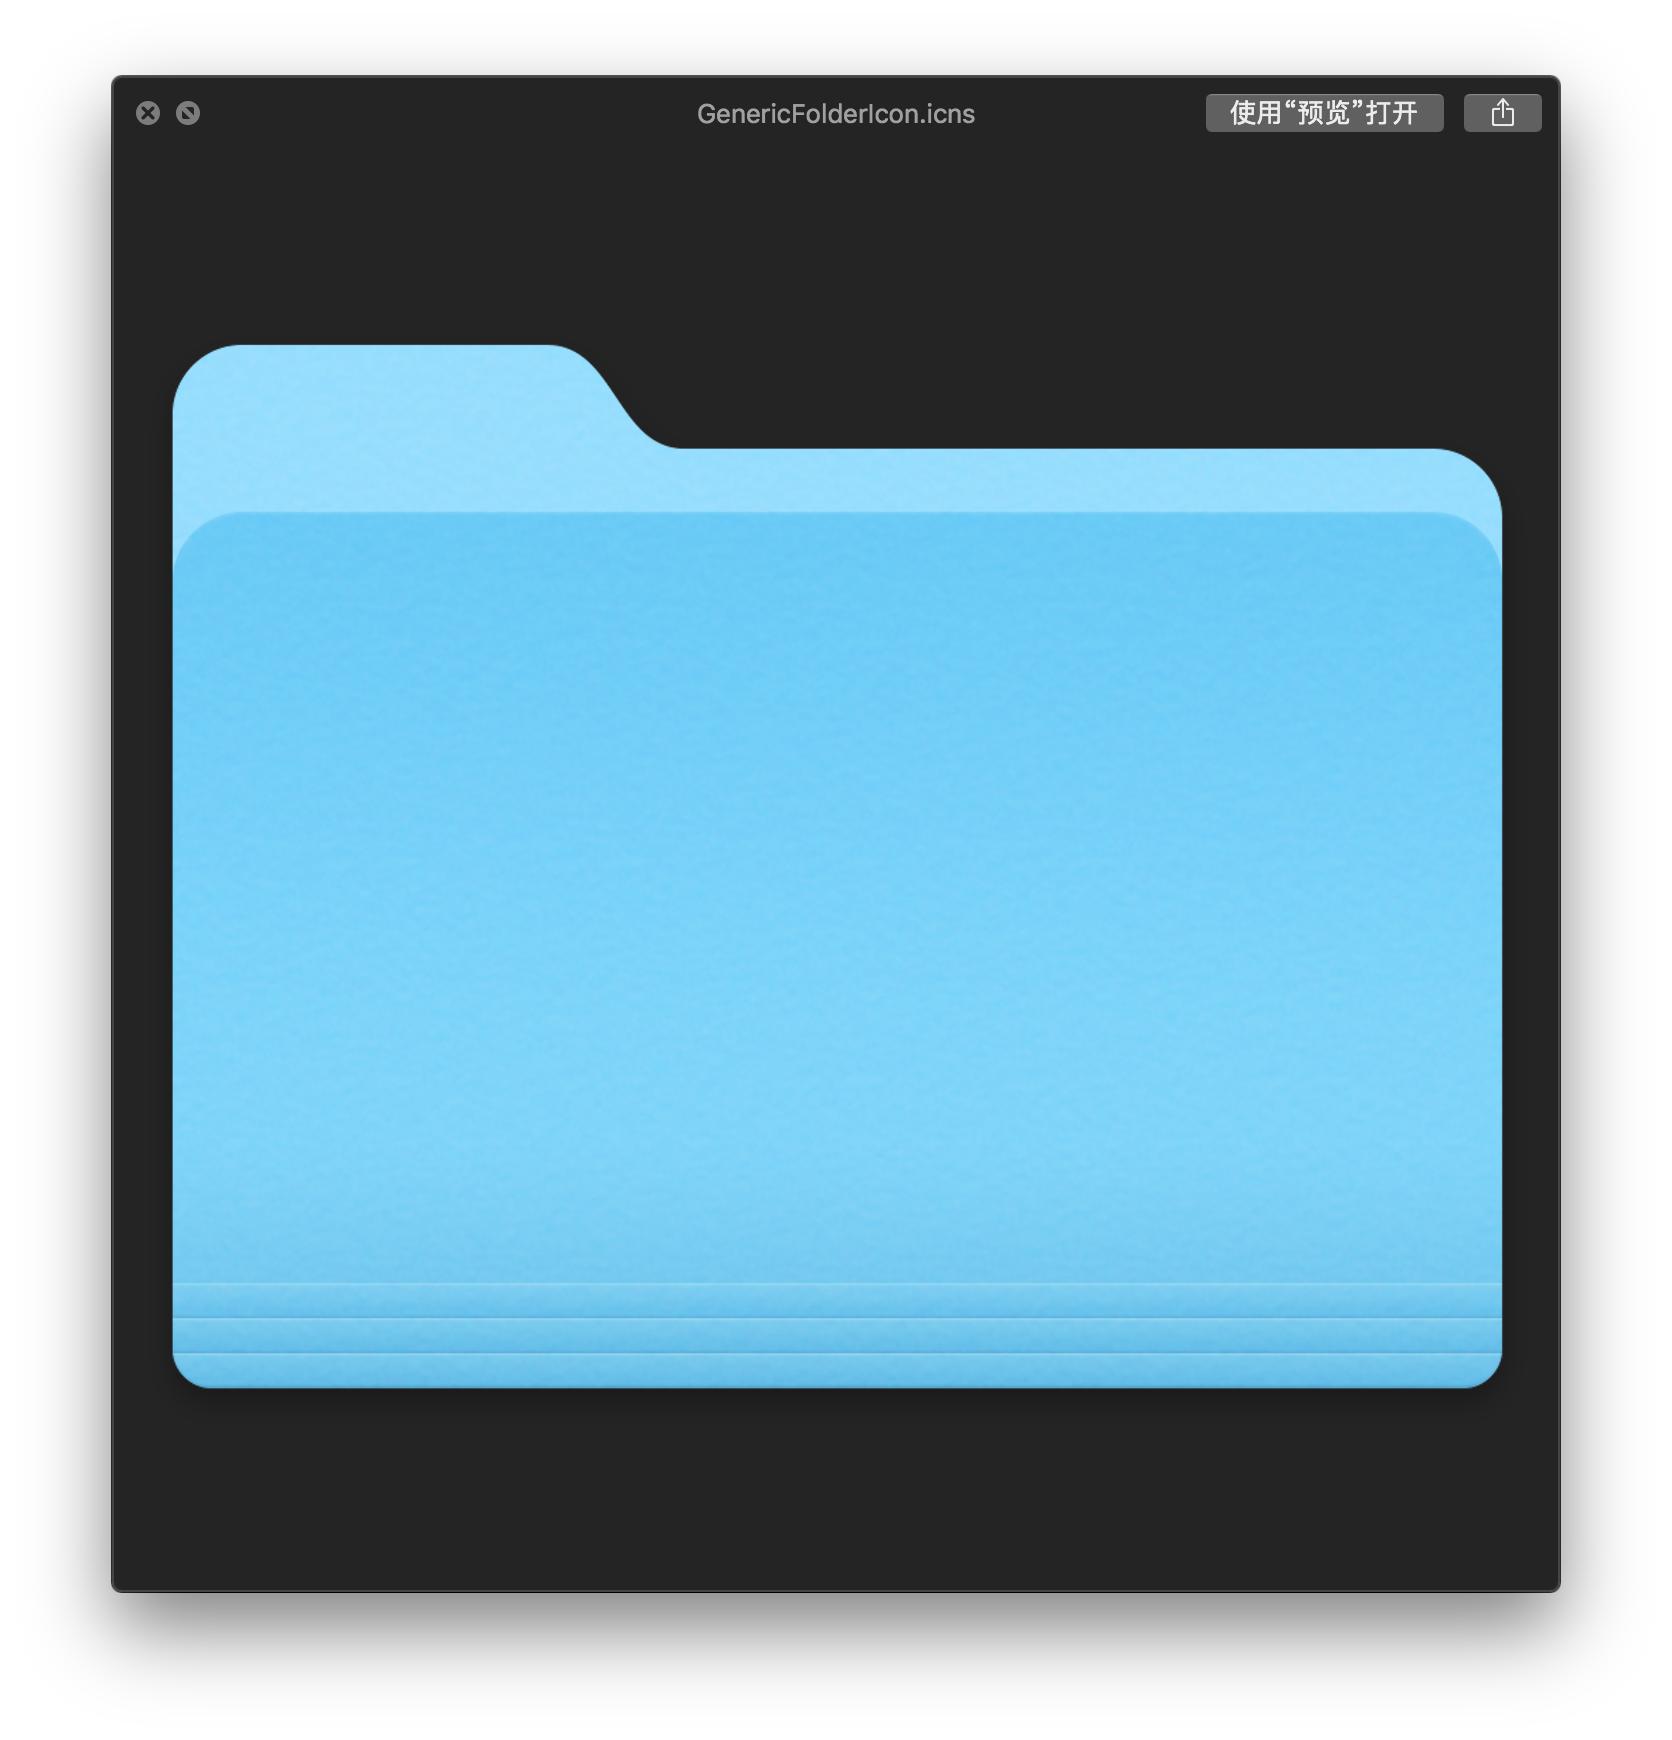 Hacking Folder Icon Mac